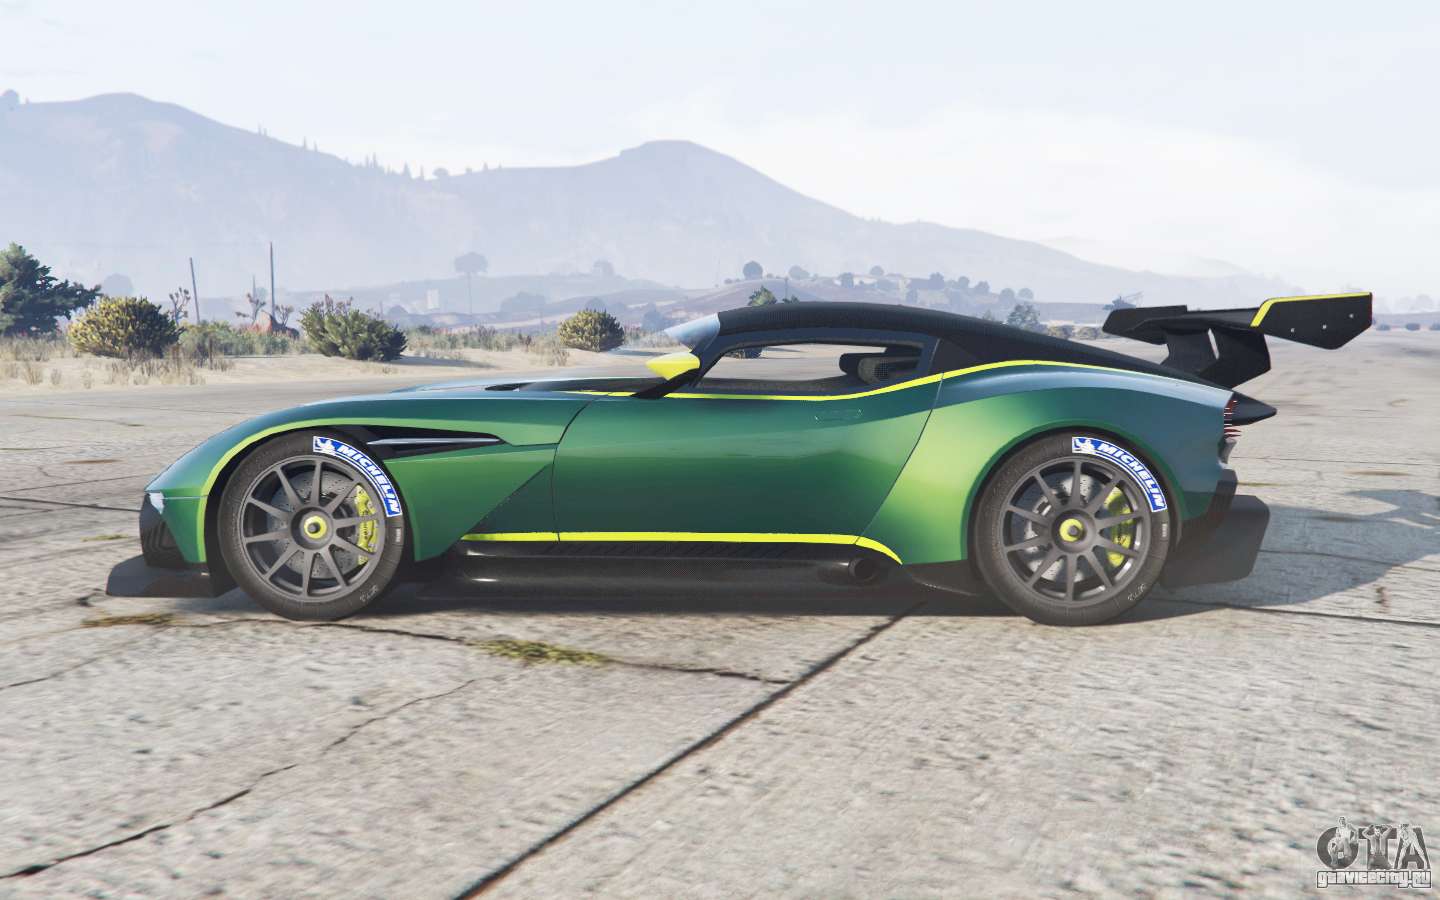 Aston Martin Vulcan GTA 5